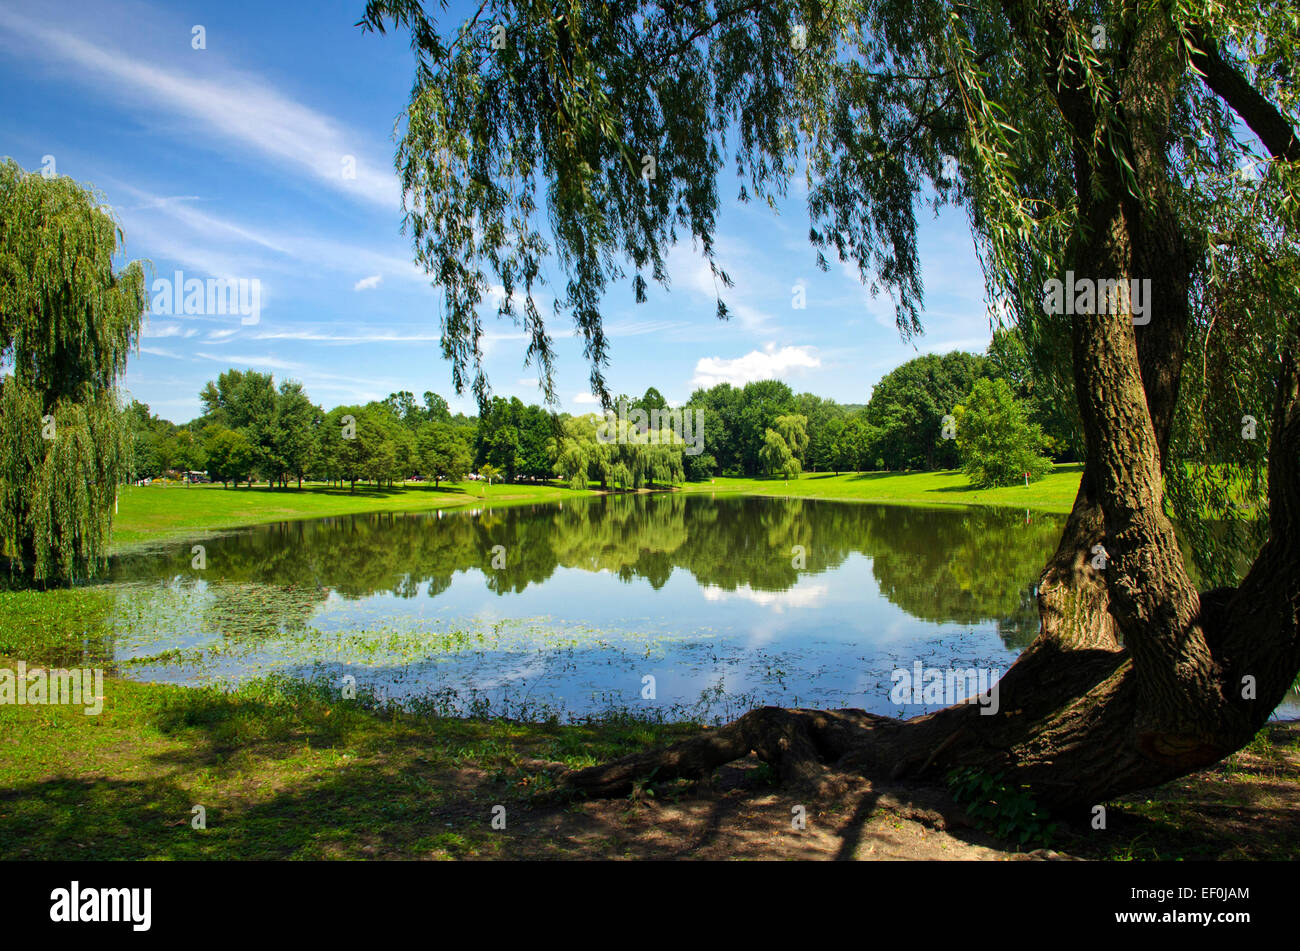 Étang d'été avec paysage saule pleureur arbre à otsiningo park de Binghamton, broome county région sud de l'état de New York aux États-Unis. Banque D'Images